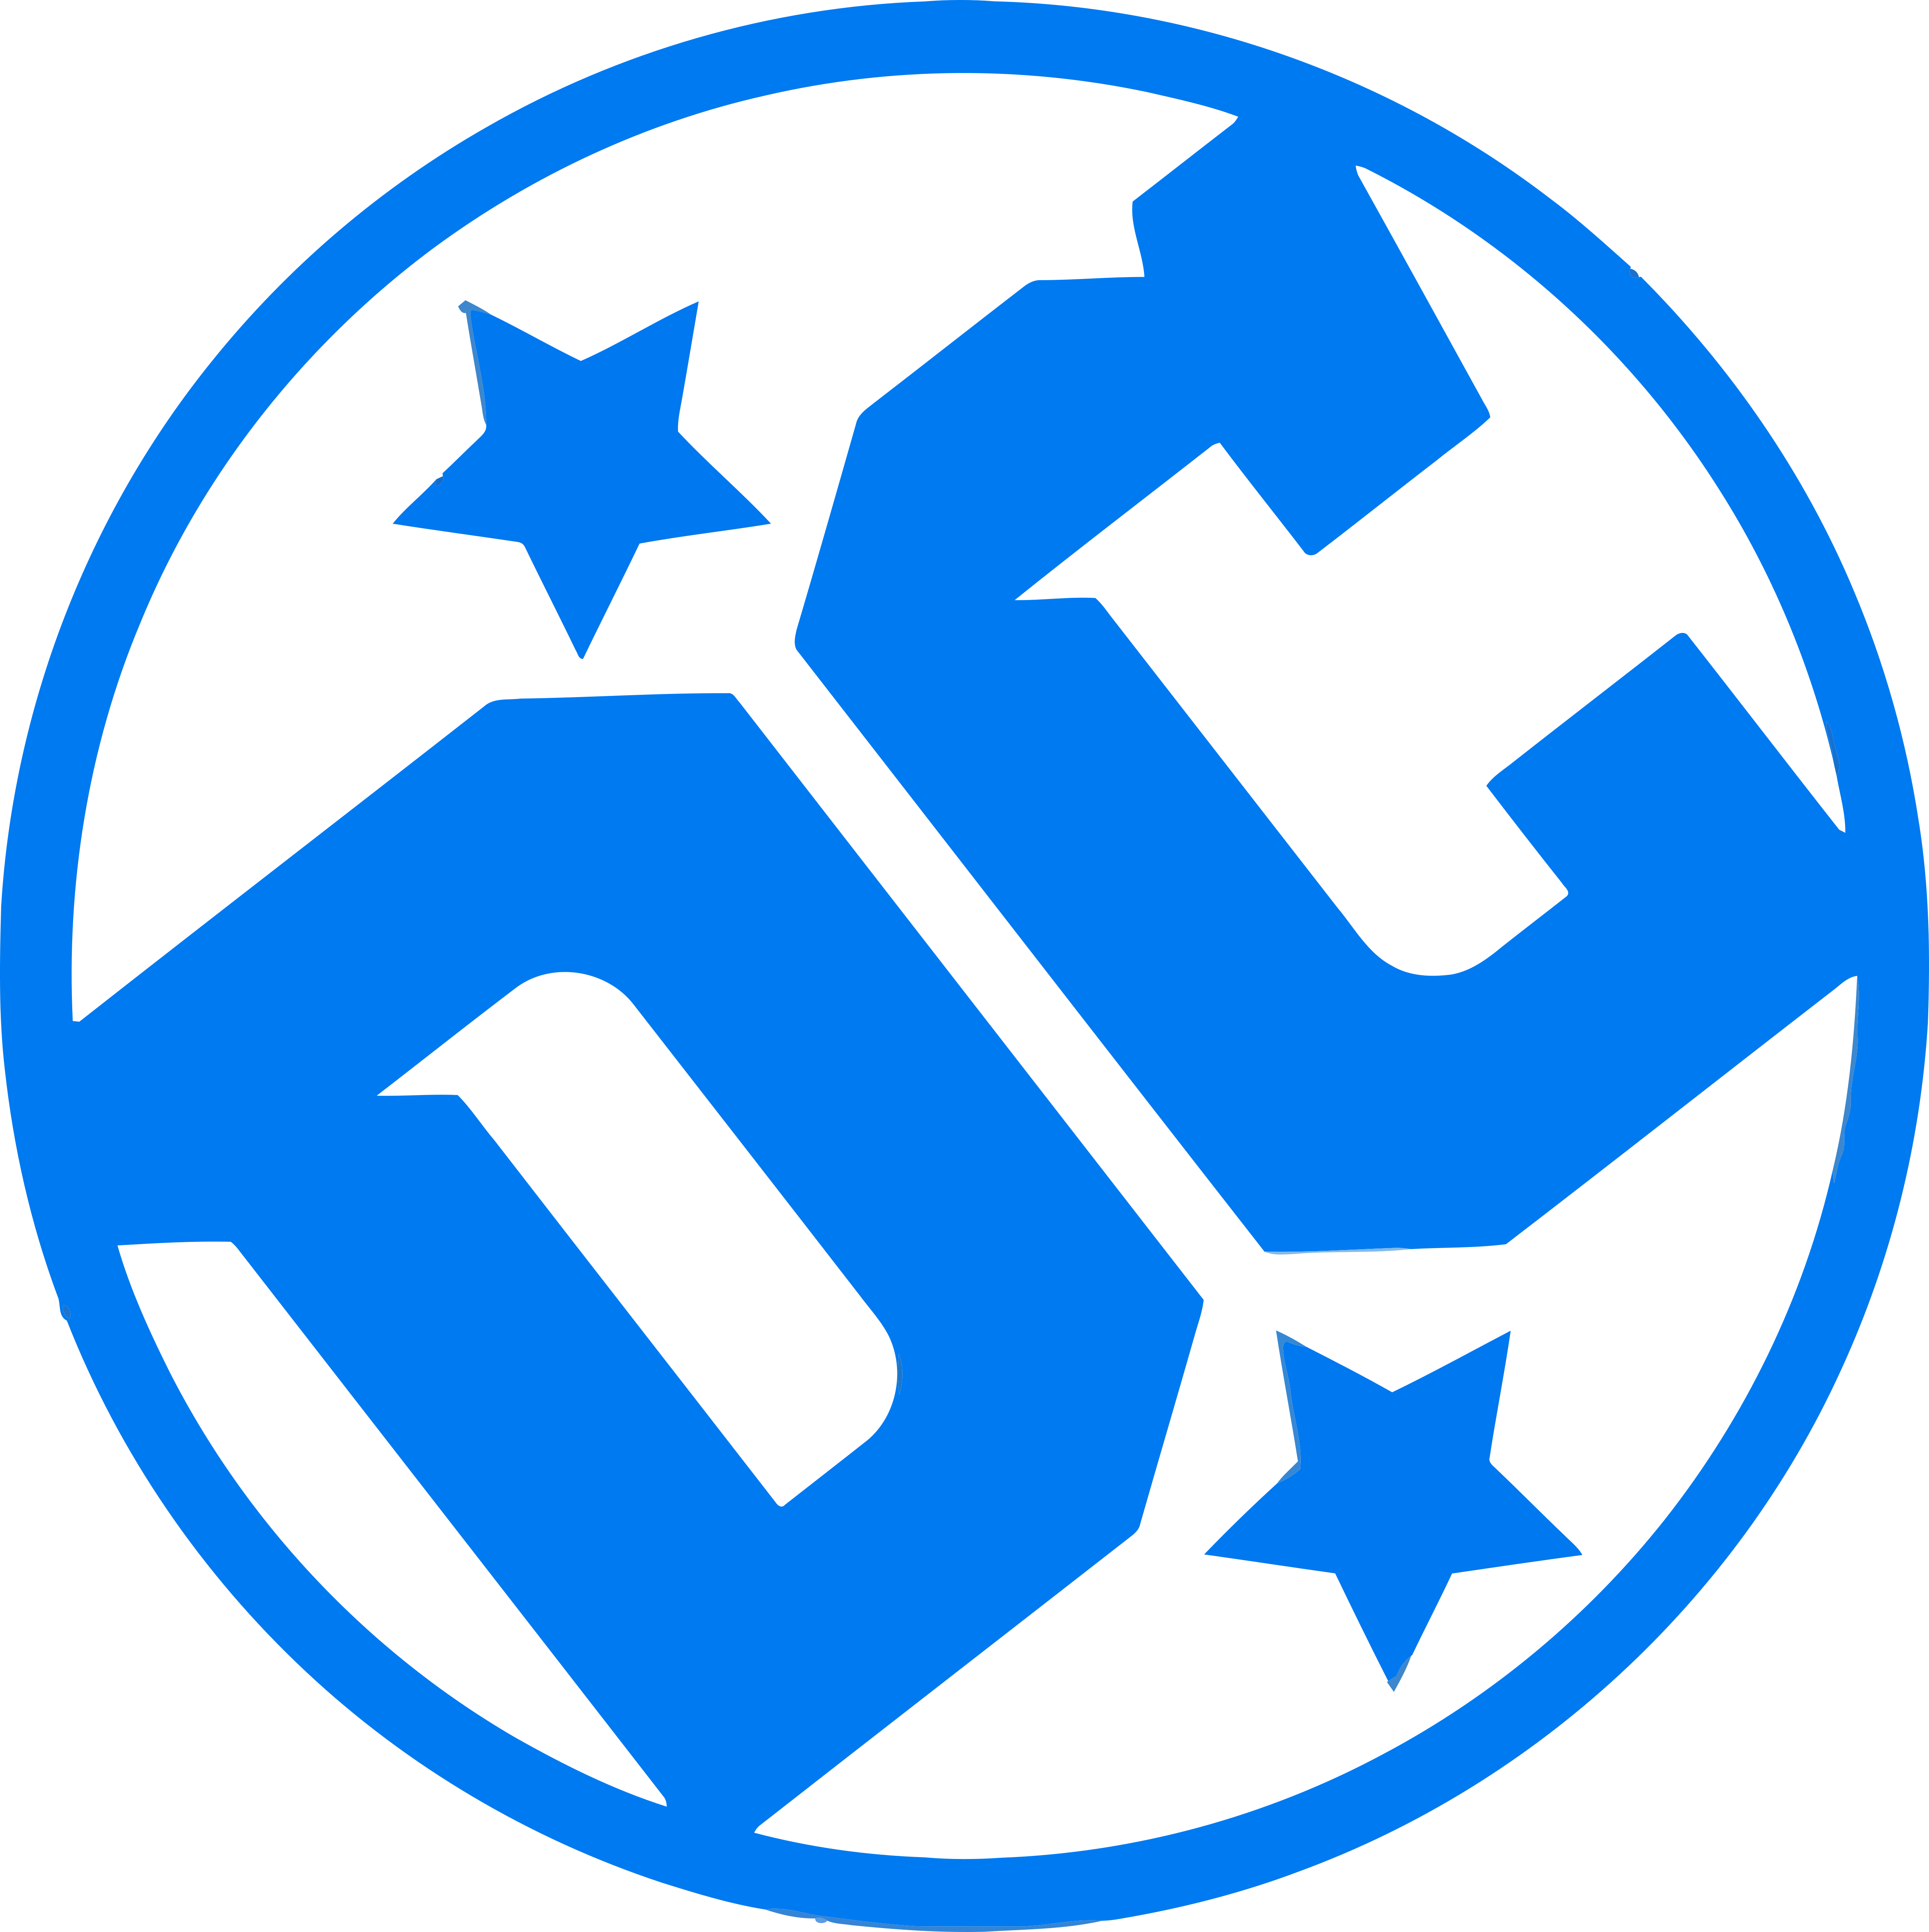 DC Logo PNG Image